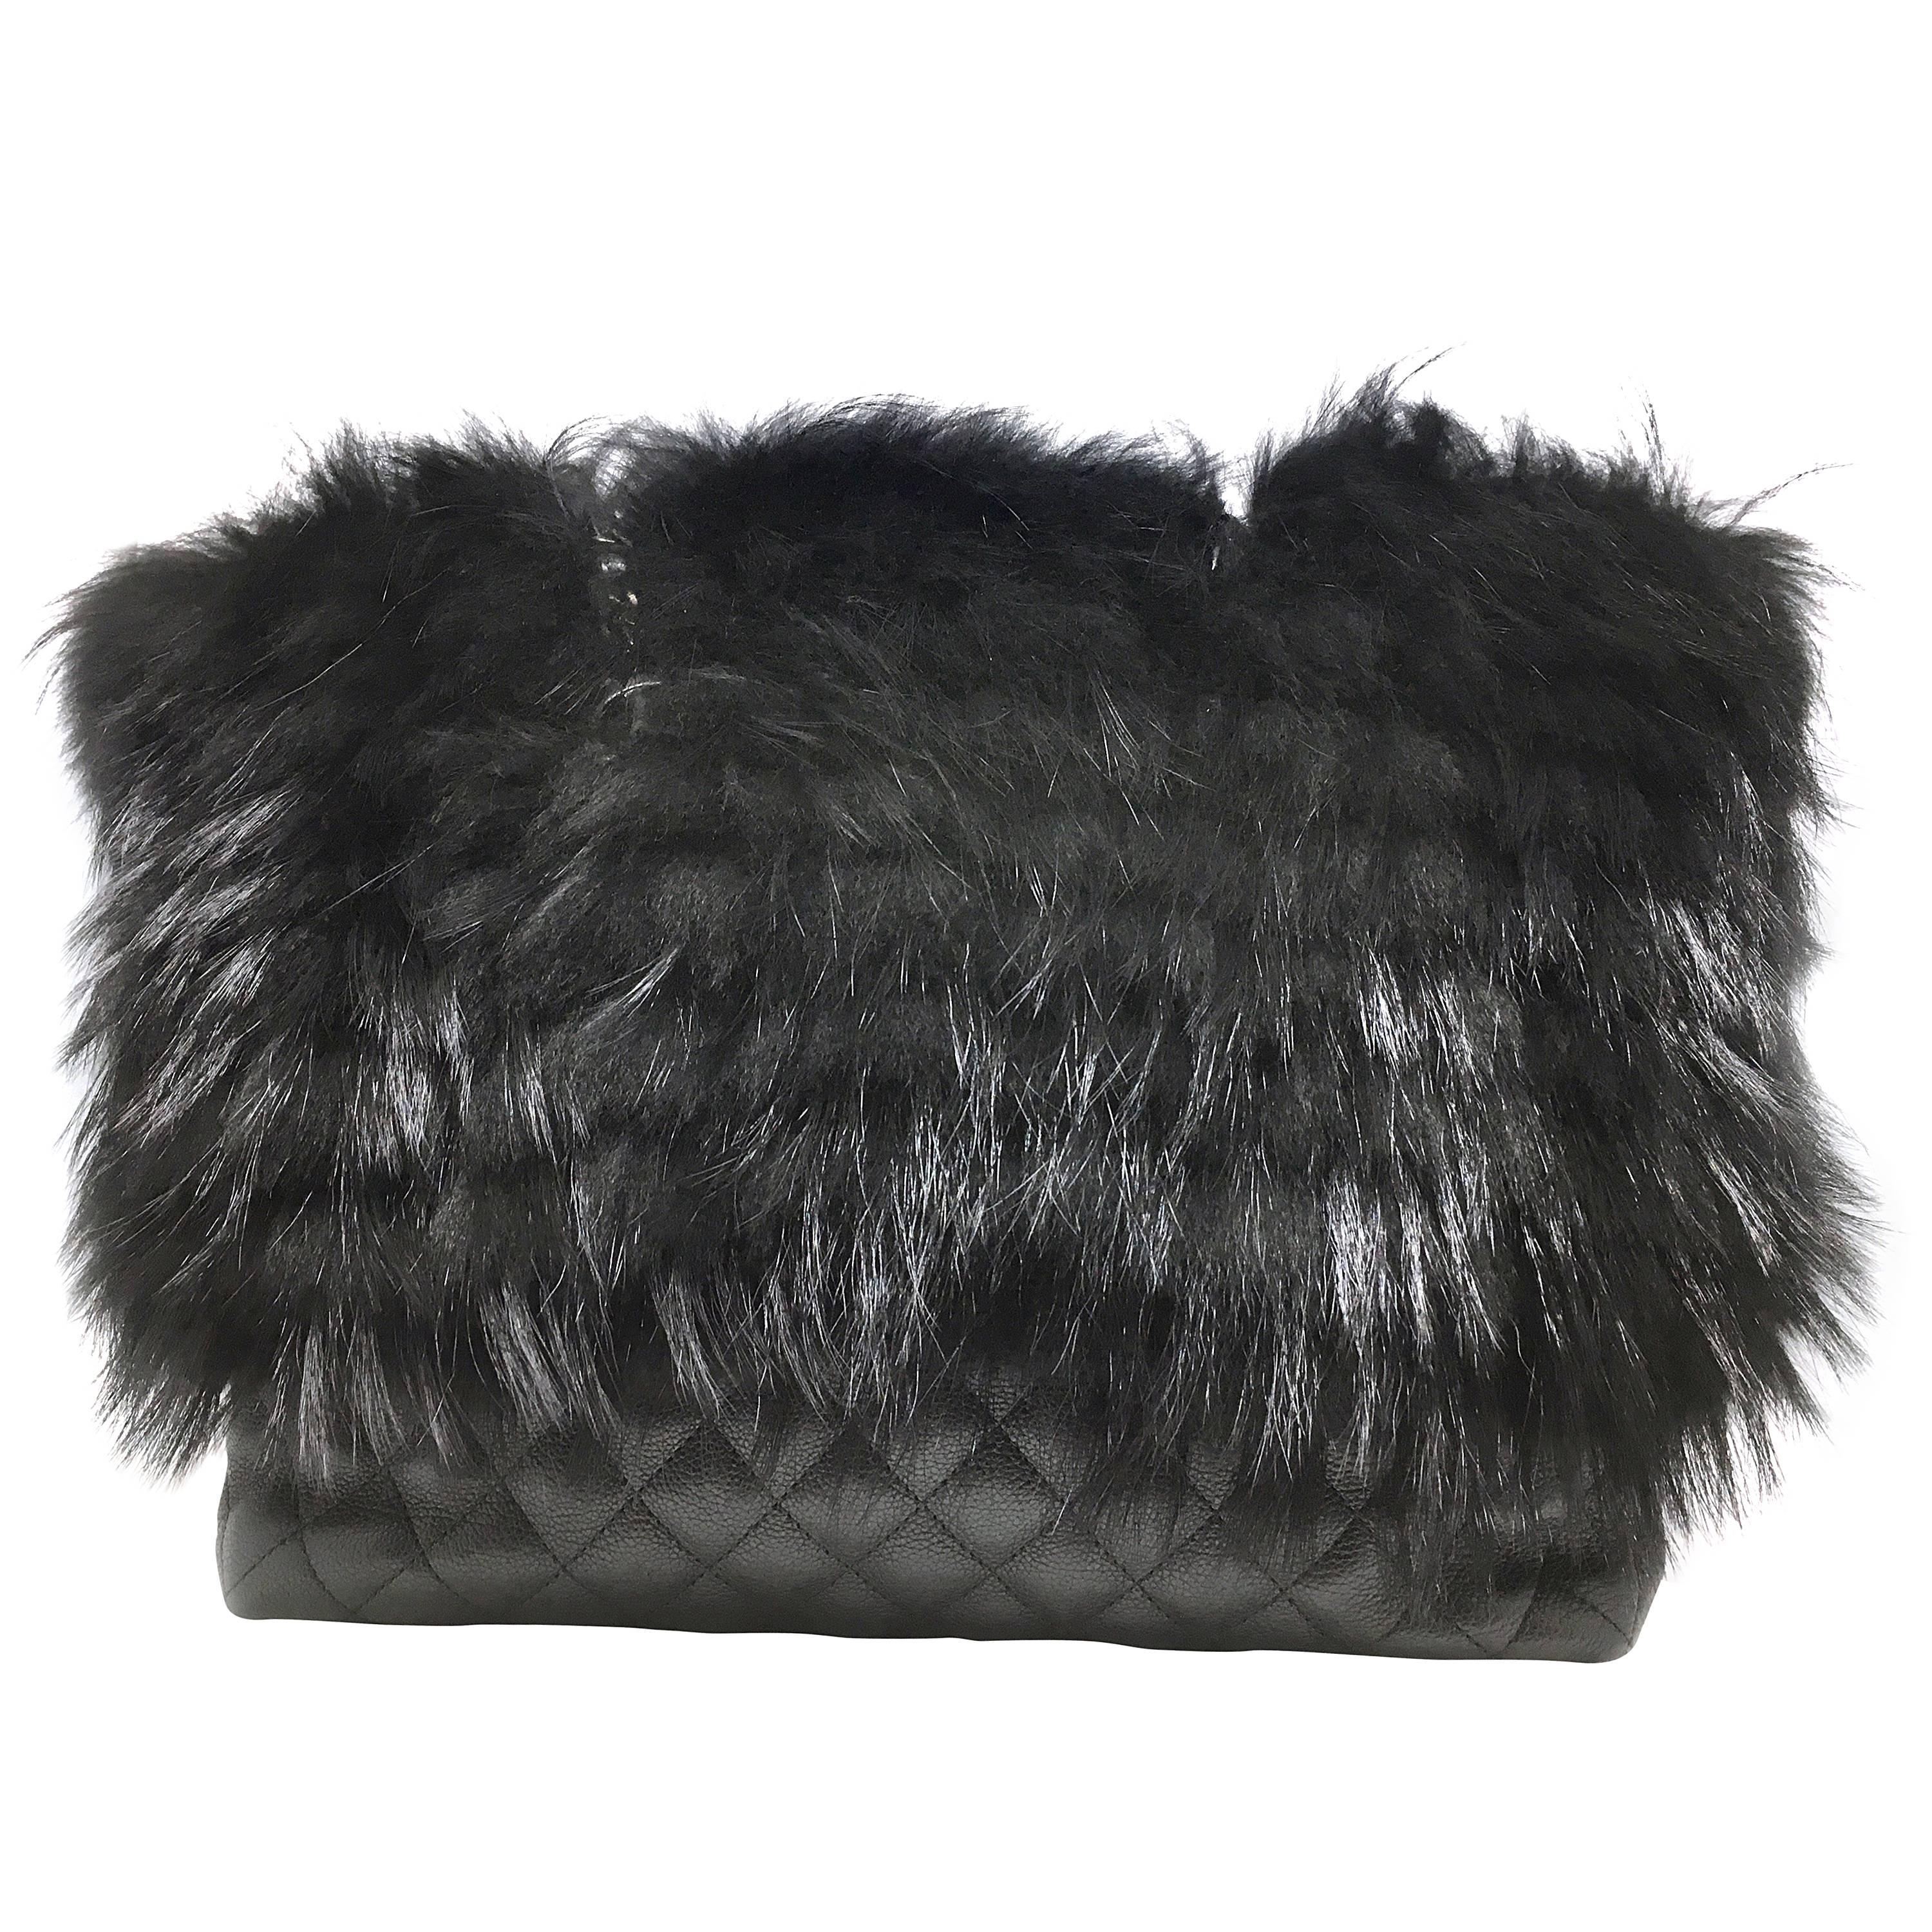 Chanel Black Calfskin Leather / Fur Chain Shoulder Bag For Sale